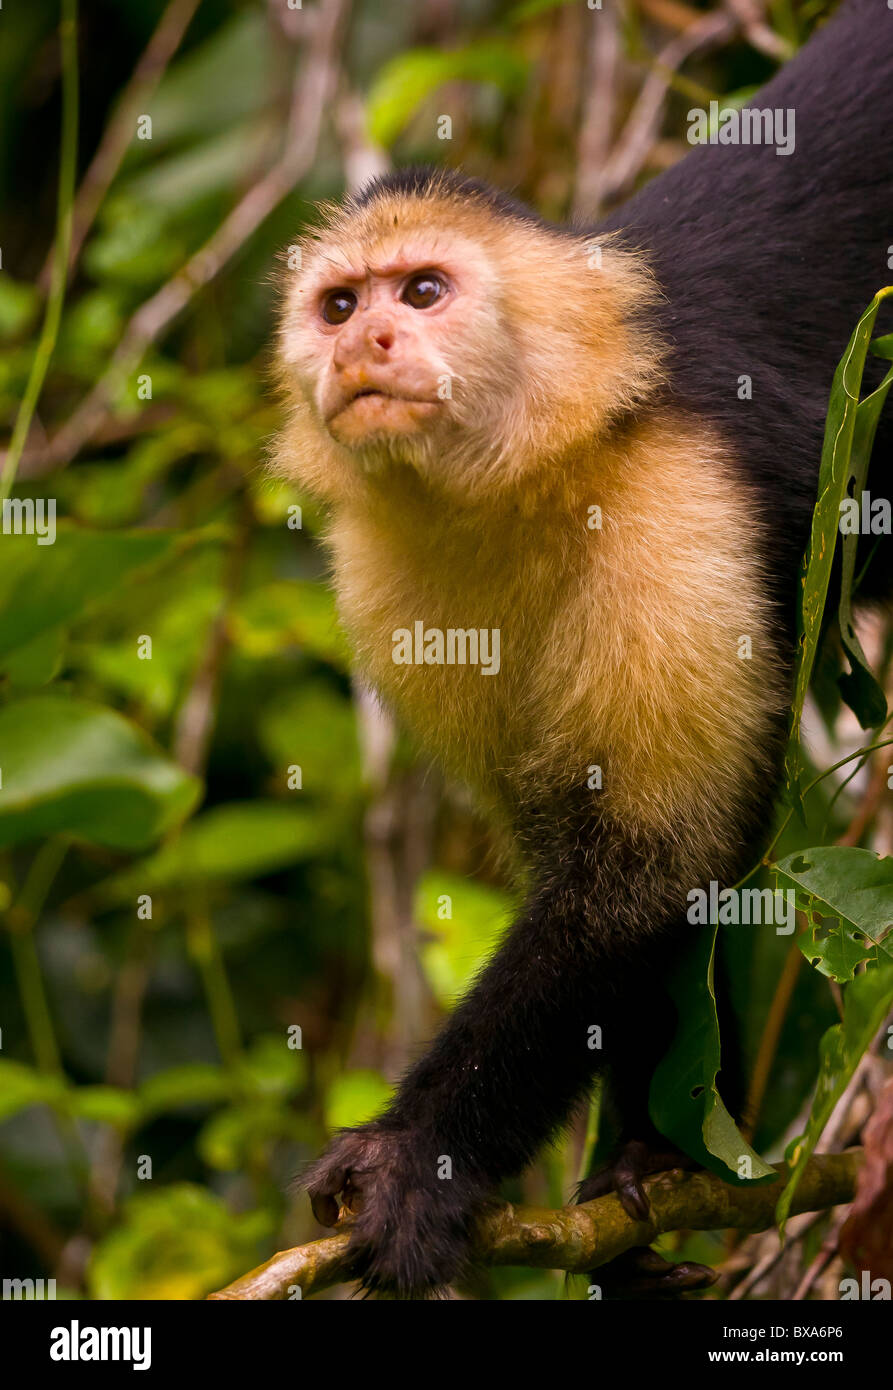 PANAMA - Singe Capucin, Cebus capucinus, au Parc National de Soberania. Banque D'Images